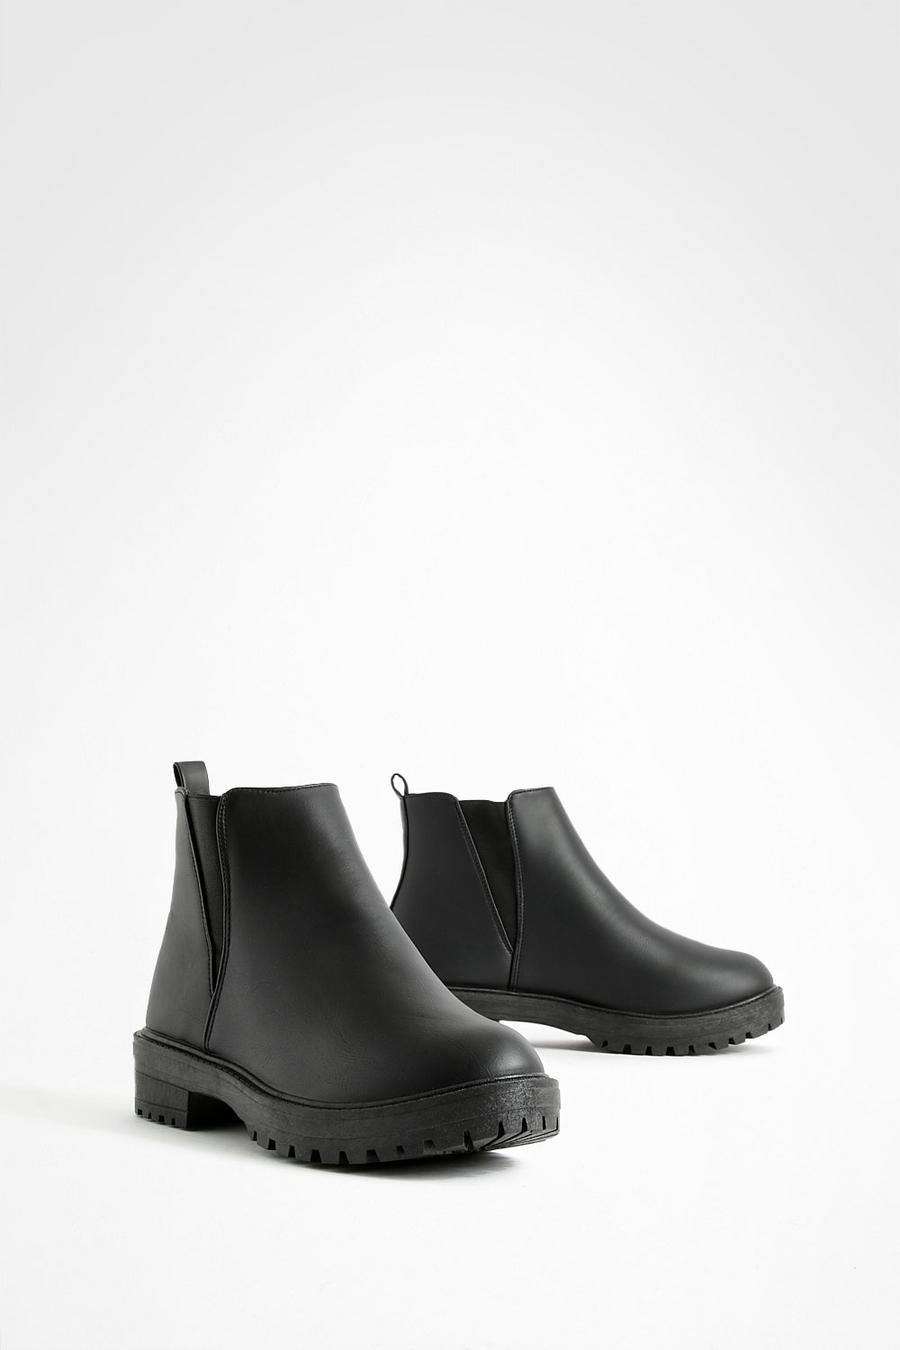 Chelsea-Boots mit robuster Profilsohle und elastischem Einsatz, Schwarz black